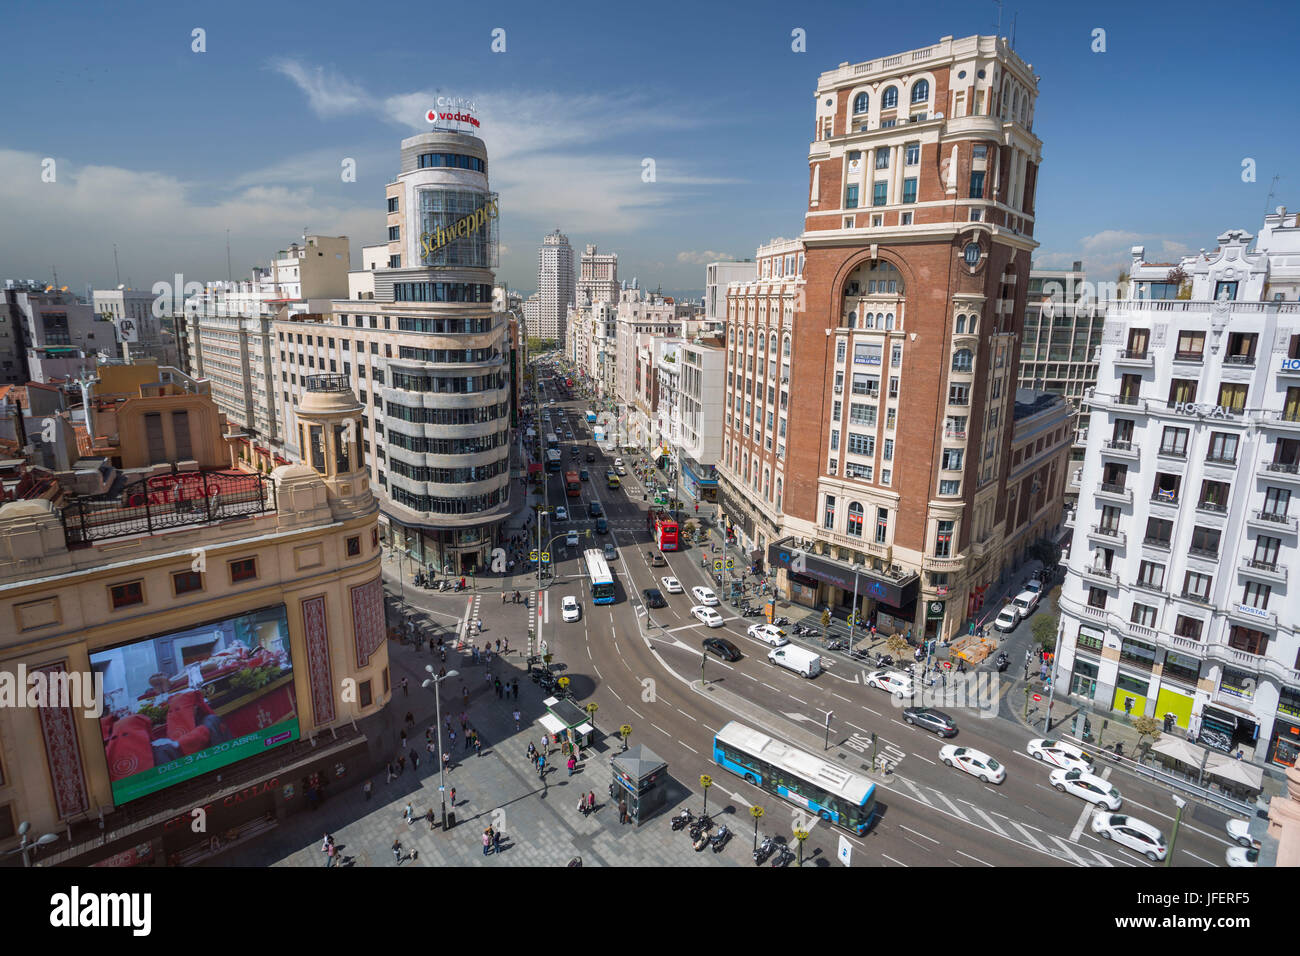 Spain, Madrid City, Gran Via Avenue, Callao square Stock Photo